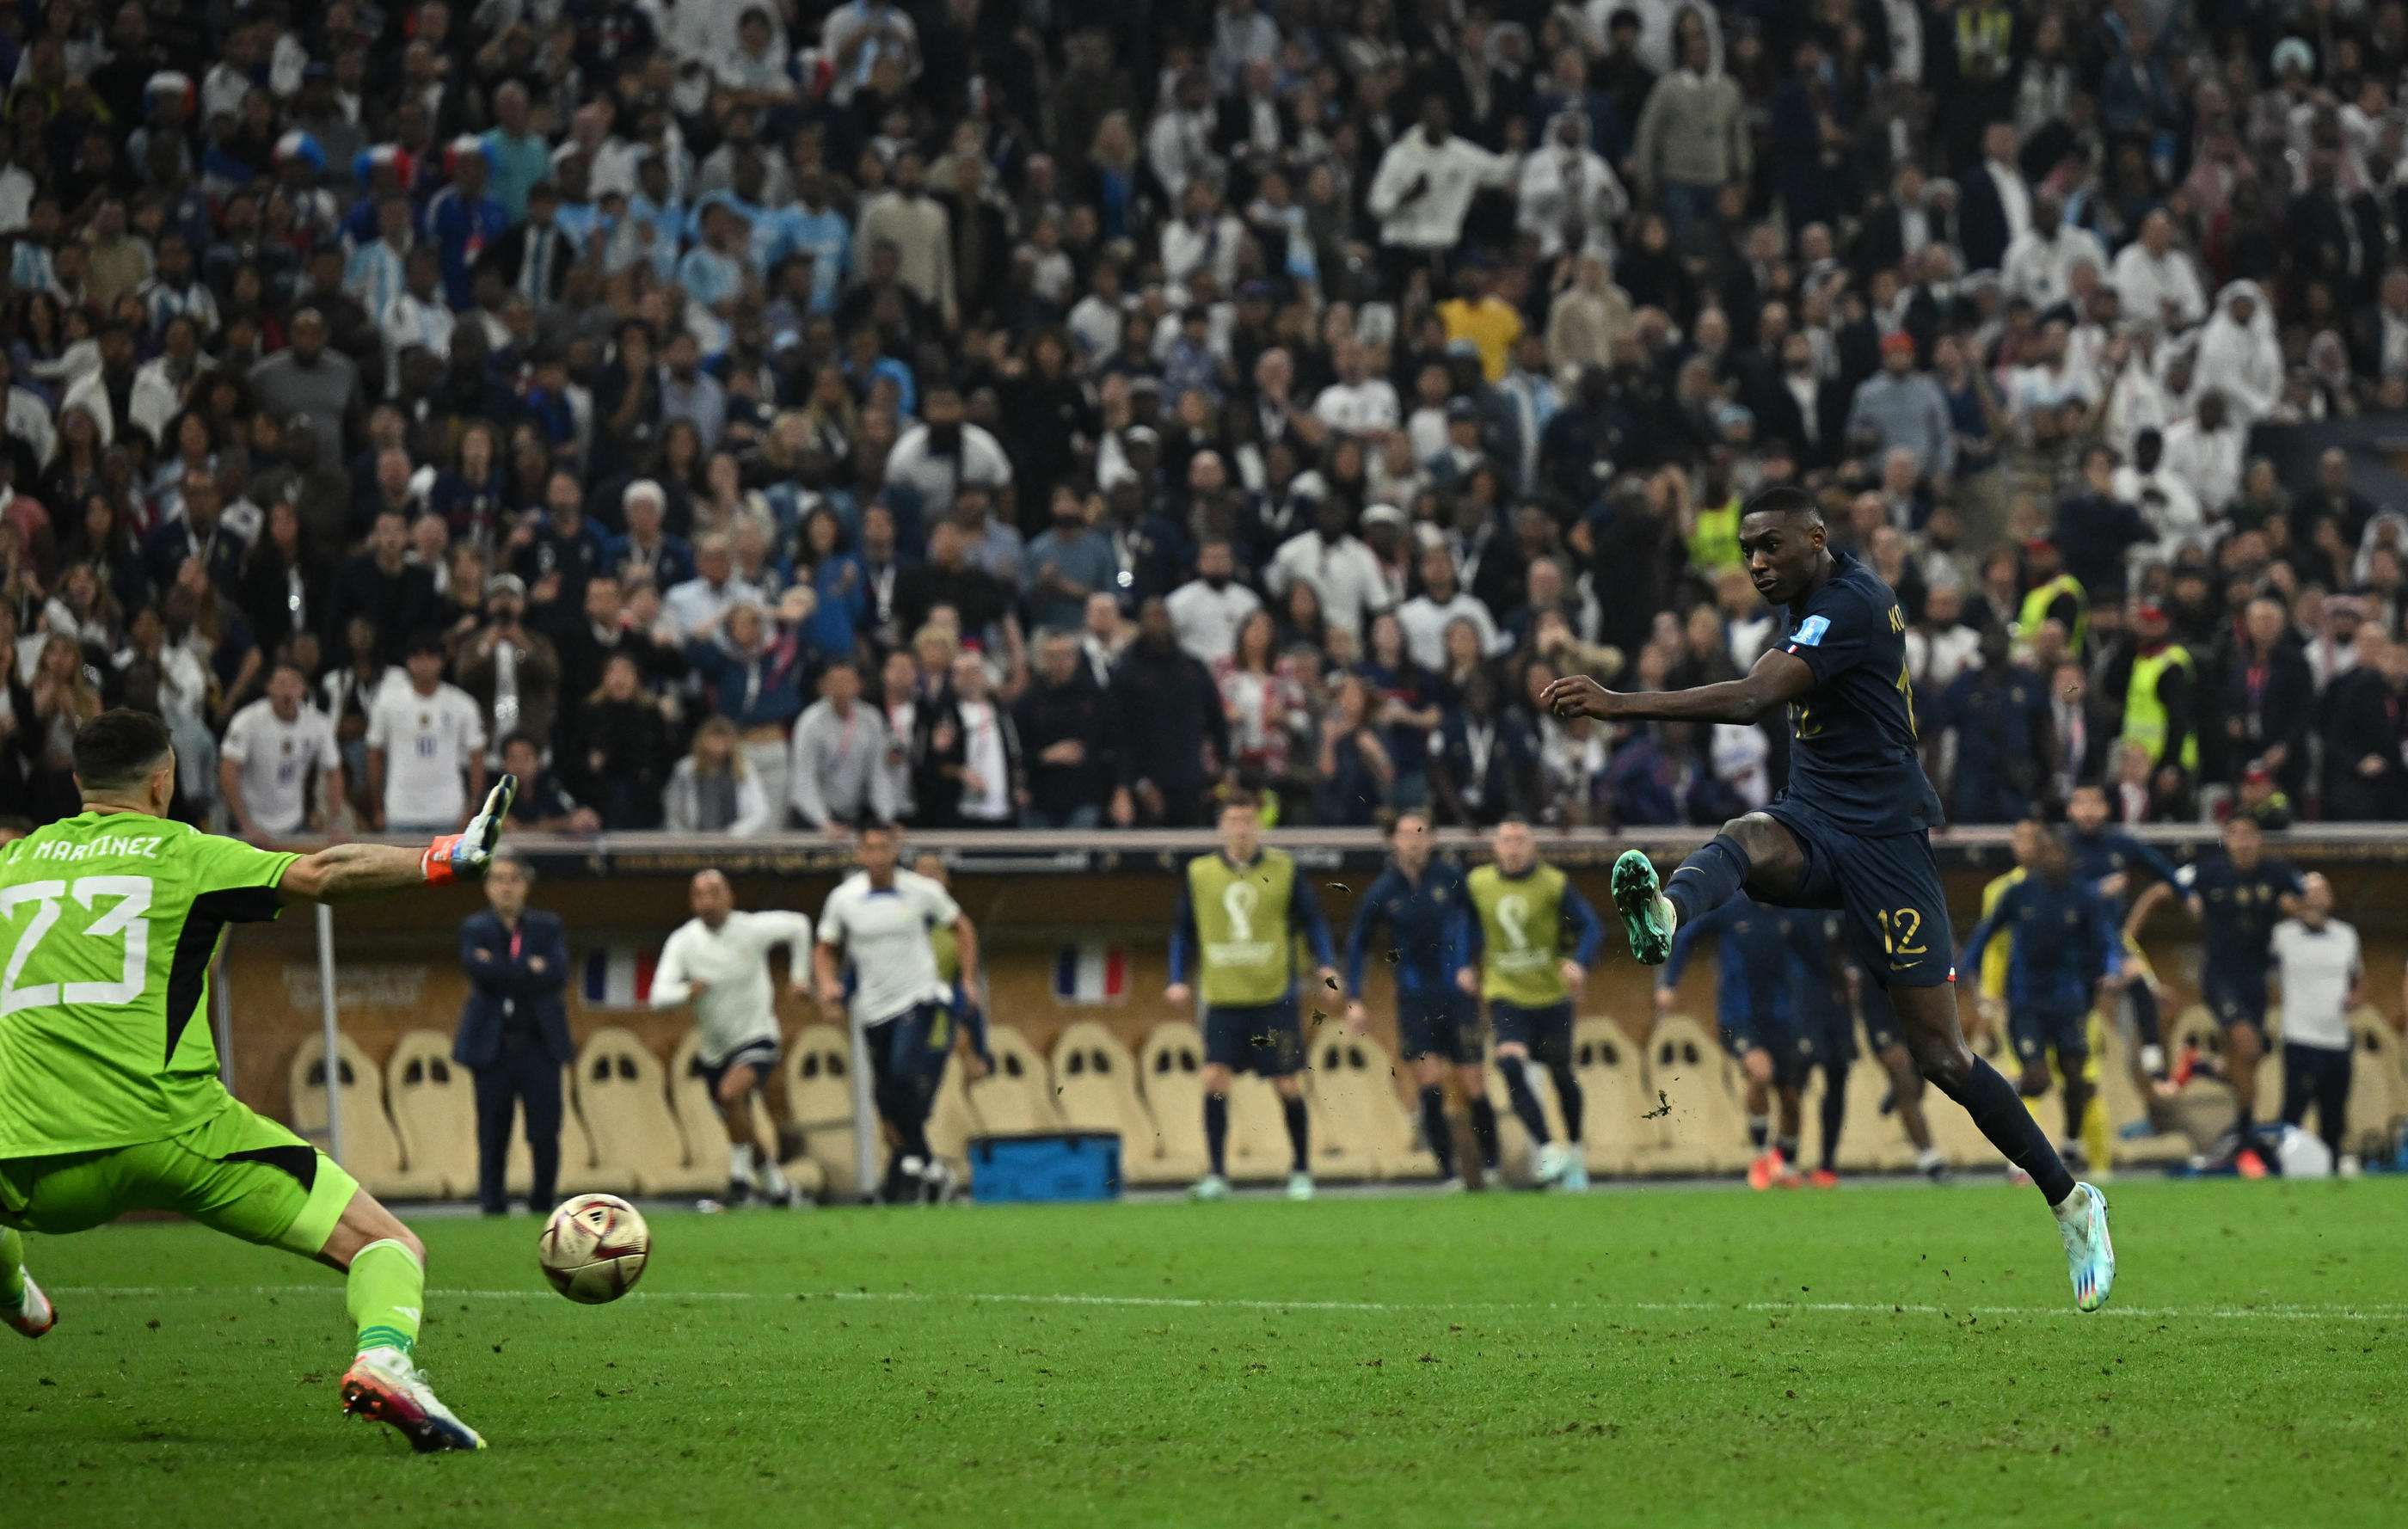 EN DIRECT - Ballon d'or: quatre Français dans la liste des 30, dont Mbappé  et Kolo Muani